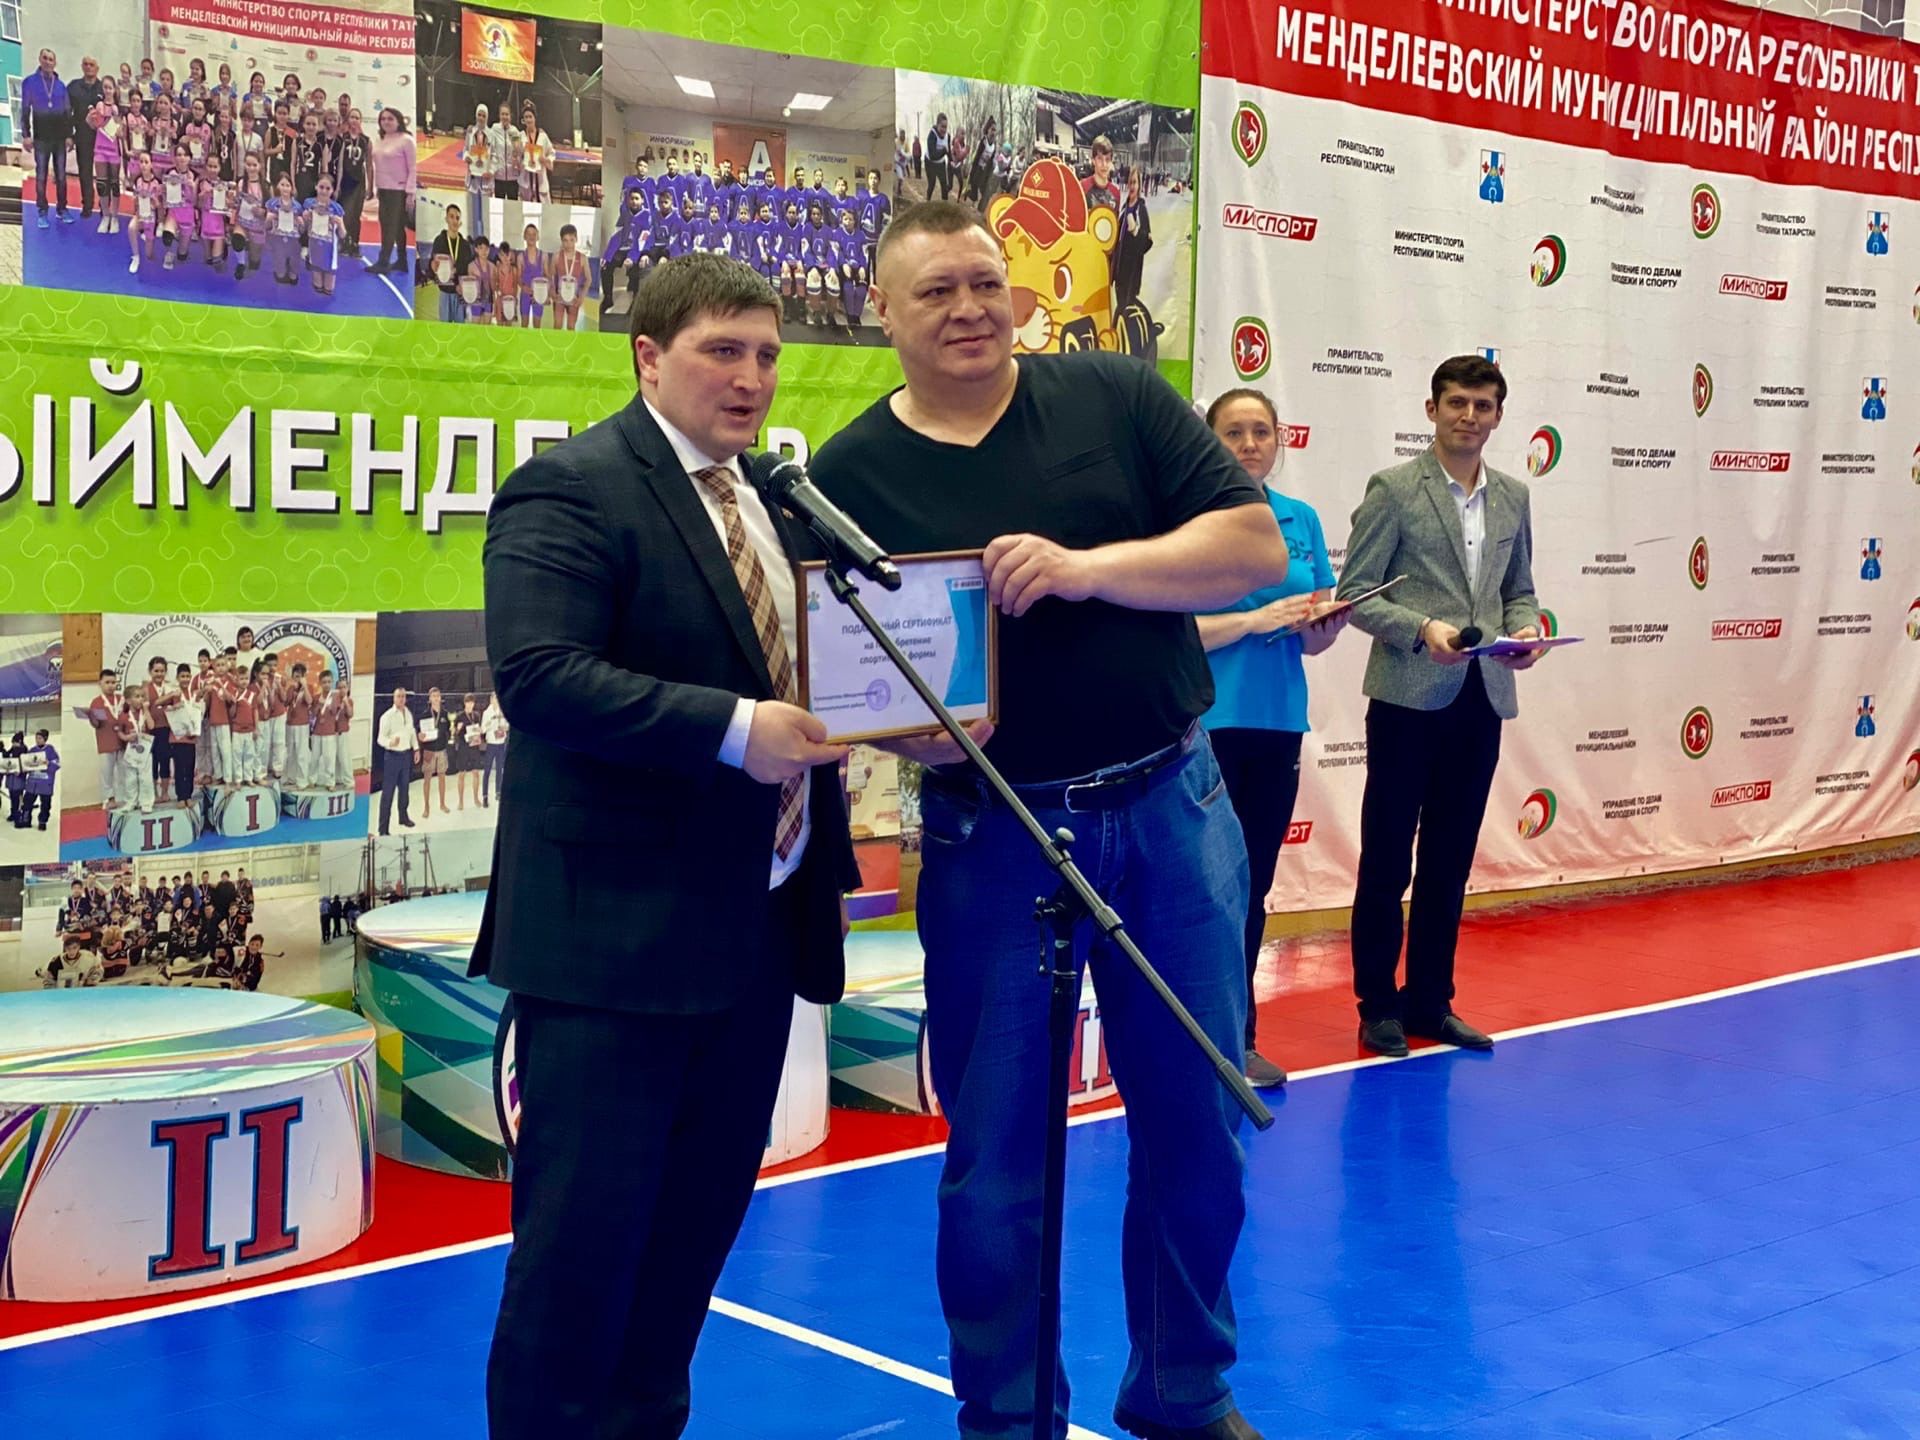 Руководитель района Радмир Беляев подарил денежный сертификат обществу инвалидов